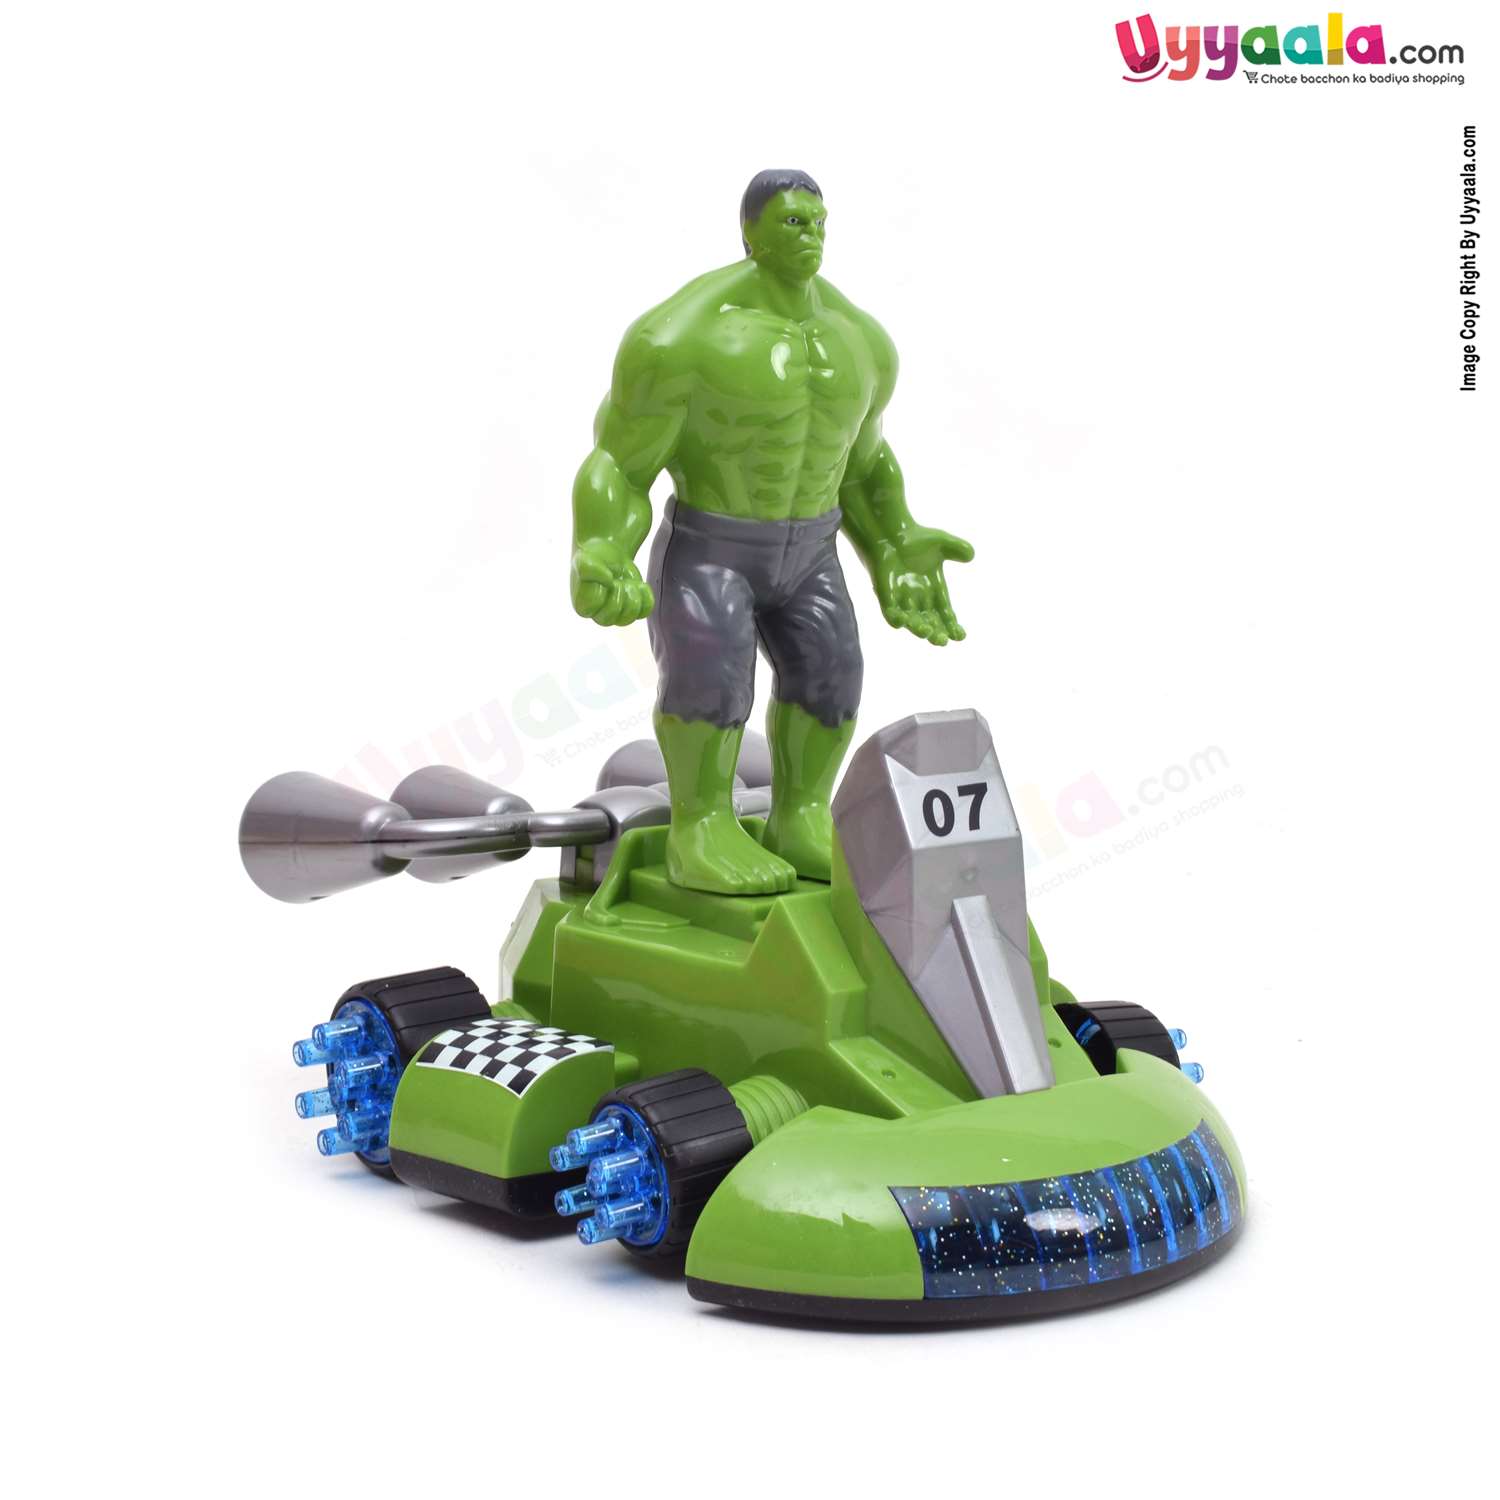 Hulk cartoon car for kids